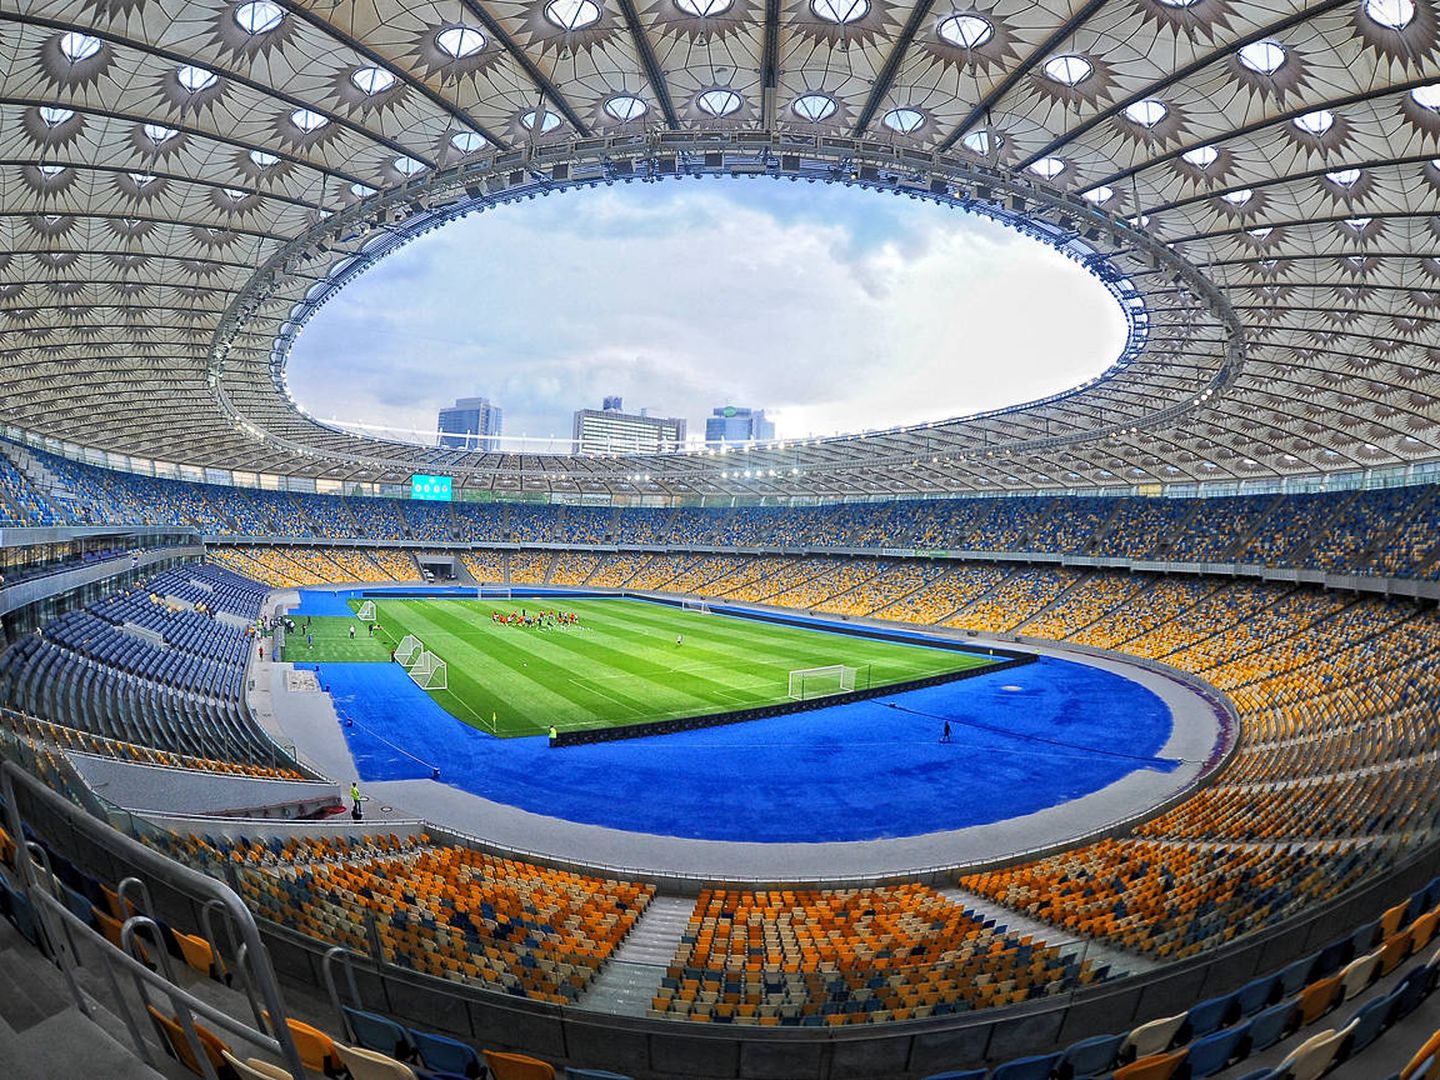 El Estadio Olímpico de Kiev, preparado para albergar la final de la Champions | Valery Ded - CC